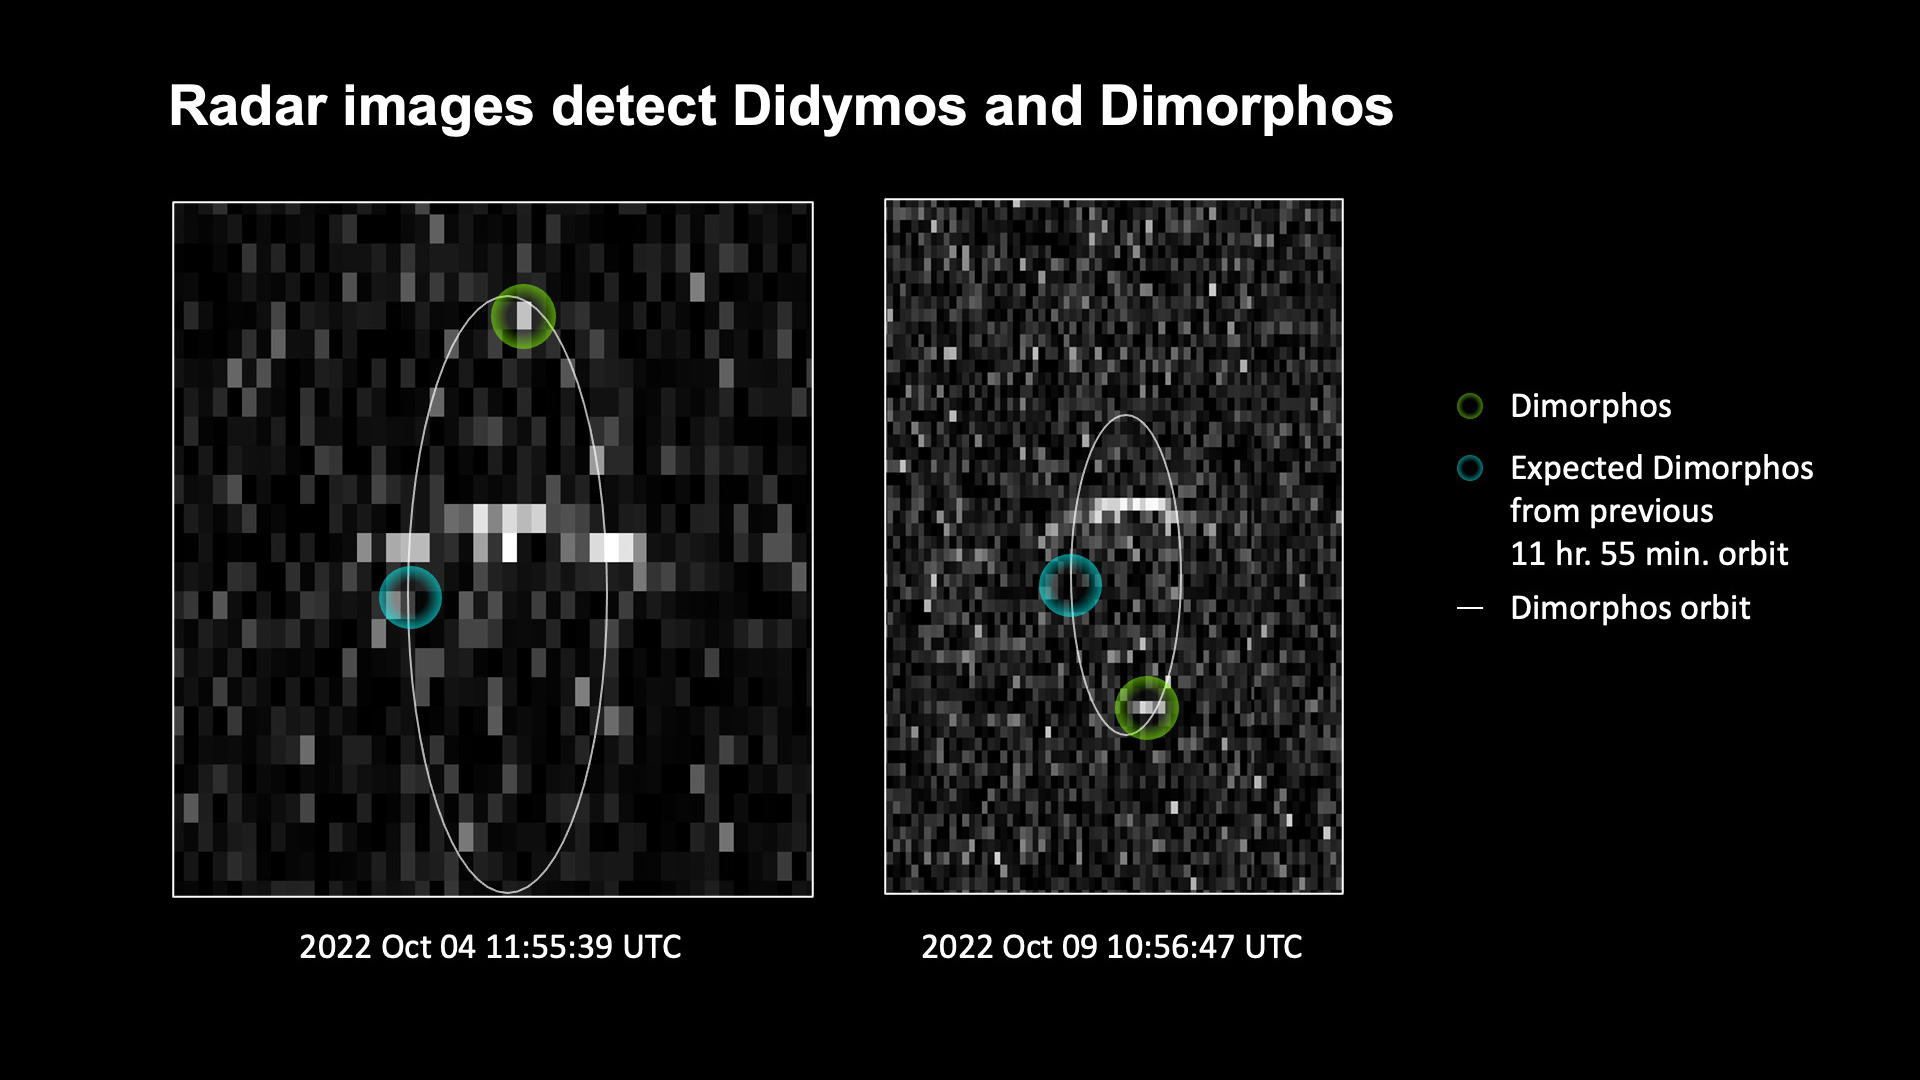 Der grüne Kreis zeigt die Position des Asteroiden Dimorphos, der den größeren Asteroiden Didymos umkreist, der hier als helle Linie in der Mitte der Bilder zu sehen ist. Der blaue Kreis zeigt, wo sich Dimorphos befunden hätte, wenn seine Umlaufbahn nicht durch den gezielten Einschlag der NASA-Mission DART in den kleineren Asteroiden am 26. September 2022 verändert worden wäre. Die Bilder zeigen das binäre Asteroidensystem Didymos und Dimorphos, die von Radareinrichtungen des Goldstone-Planetenradars des Jet Propulsion Laboratory der NASA in Kalifornien und des Green Bank Observatory der National Science Foundation in West Virginia aufgenommen wurden. Links sind die Goldstone-Beobachtungen vom 4. Oktober 2022 zu sehen, rechts die kombinierten Beobachtungen von Goldstone und Green Bank vom 9. Oktober 2022.